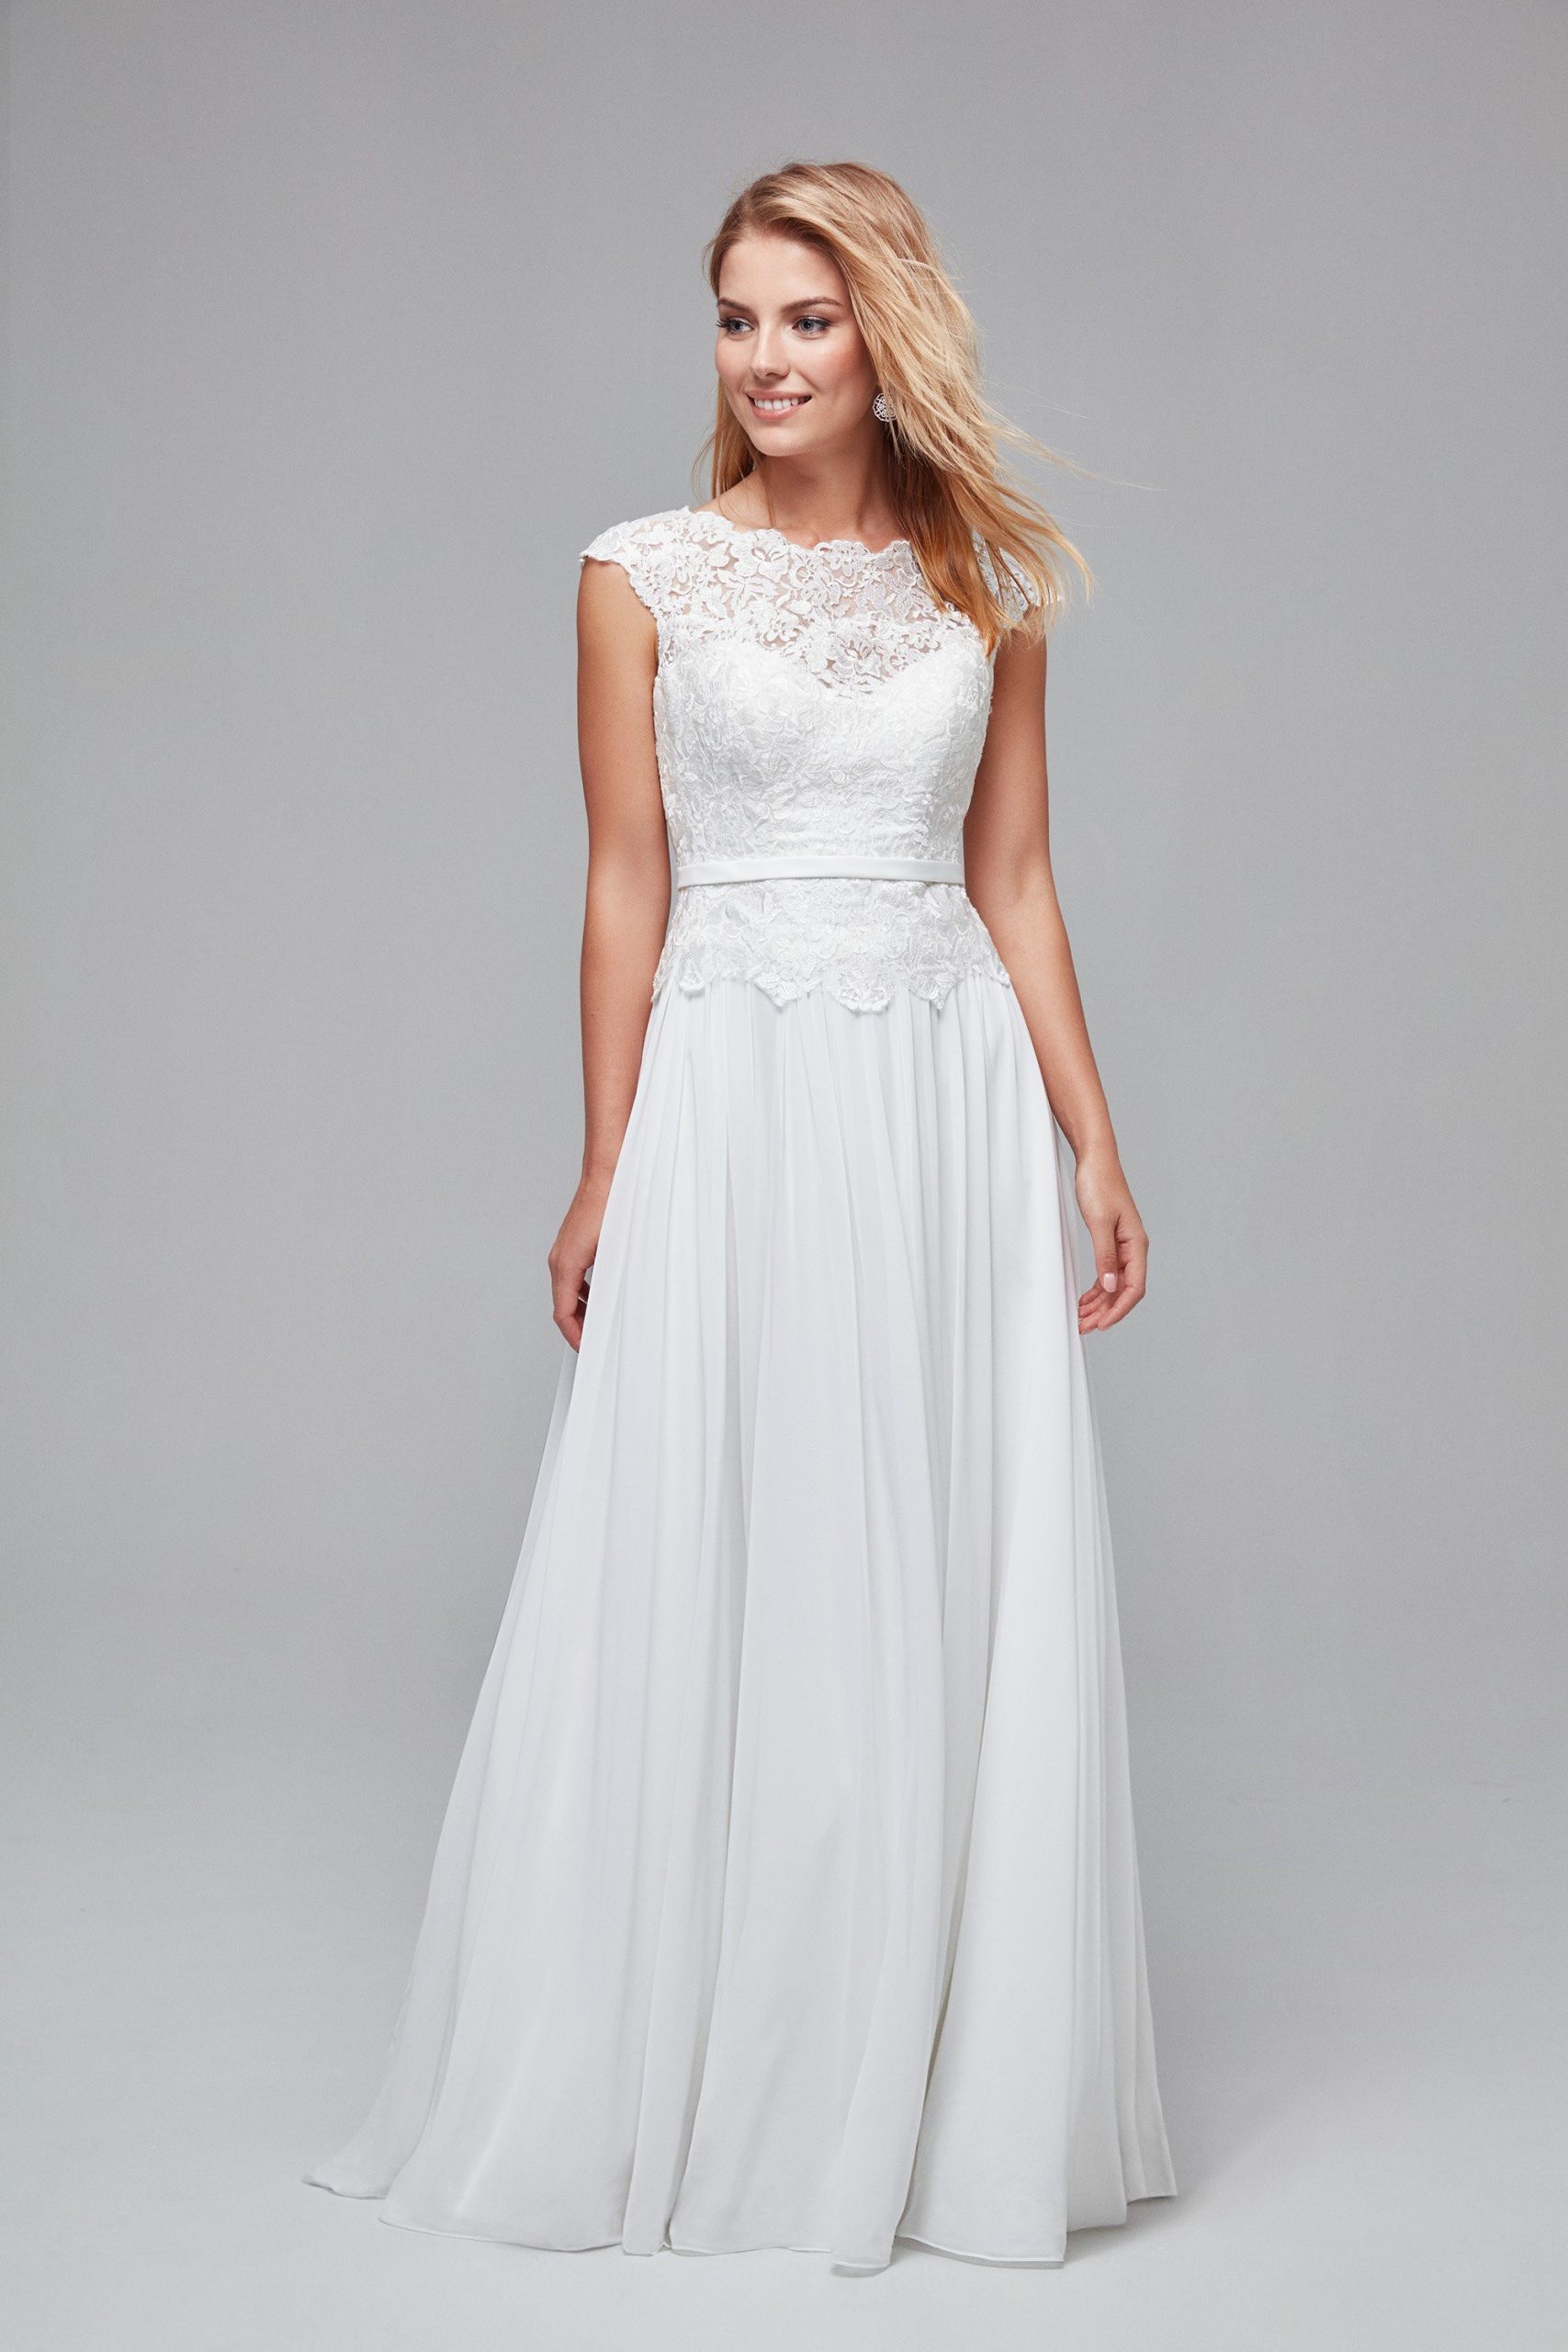 A Line Lace Wedding Dress
 Illusion Lace and Chiffon A Line Wedding Dress WG3851